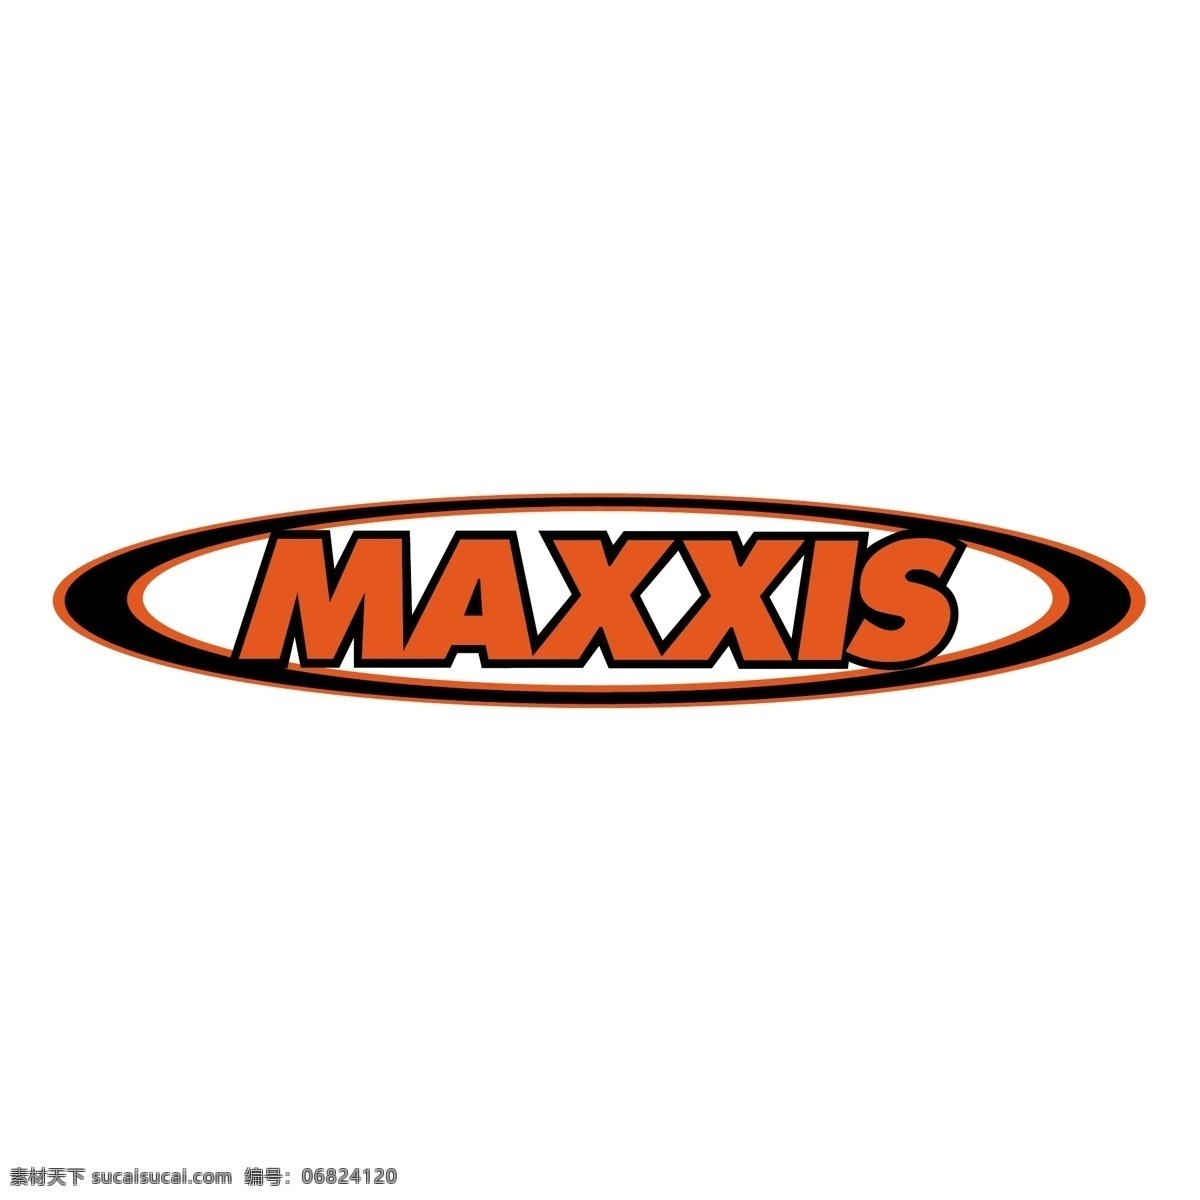 maxxis 玛吉 斯 轮胎 标志 玛吉斯 汽车部件 标识 图标 企业 logo 标识标志图标 矢量图库